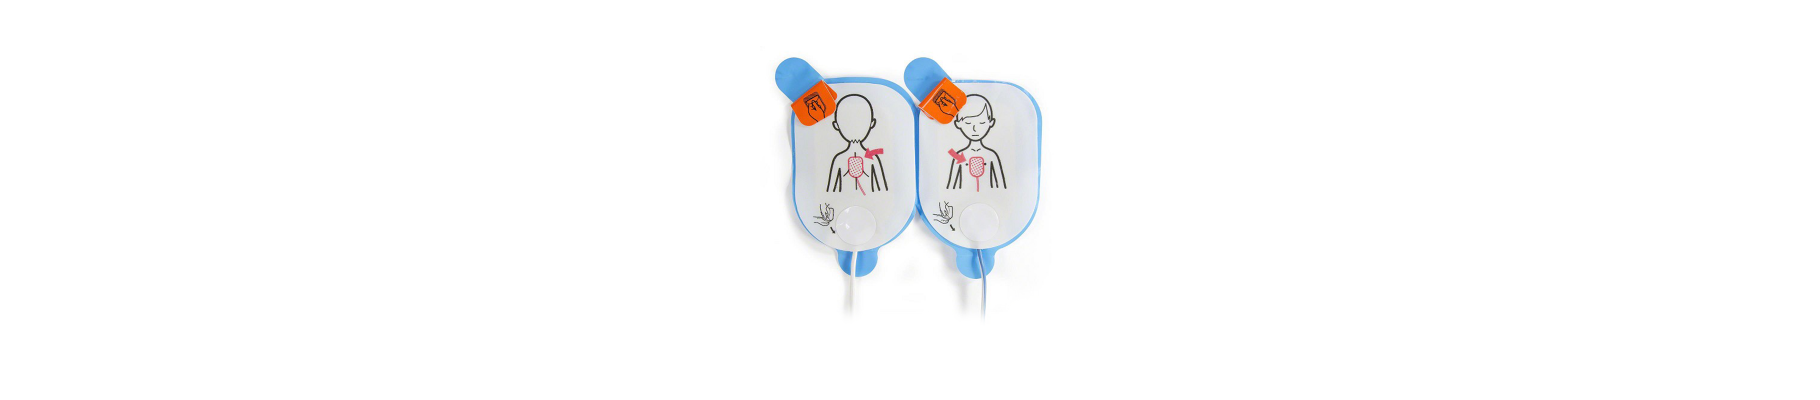 Electrodes pédiatriques pour Defibtech Lifeline